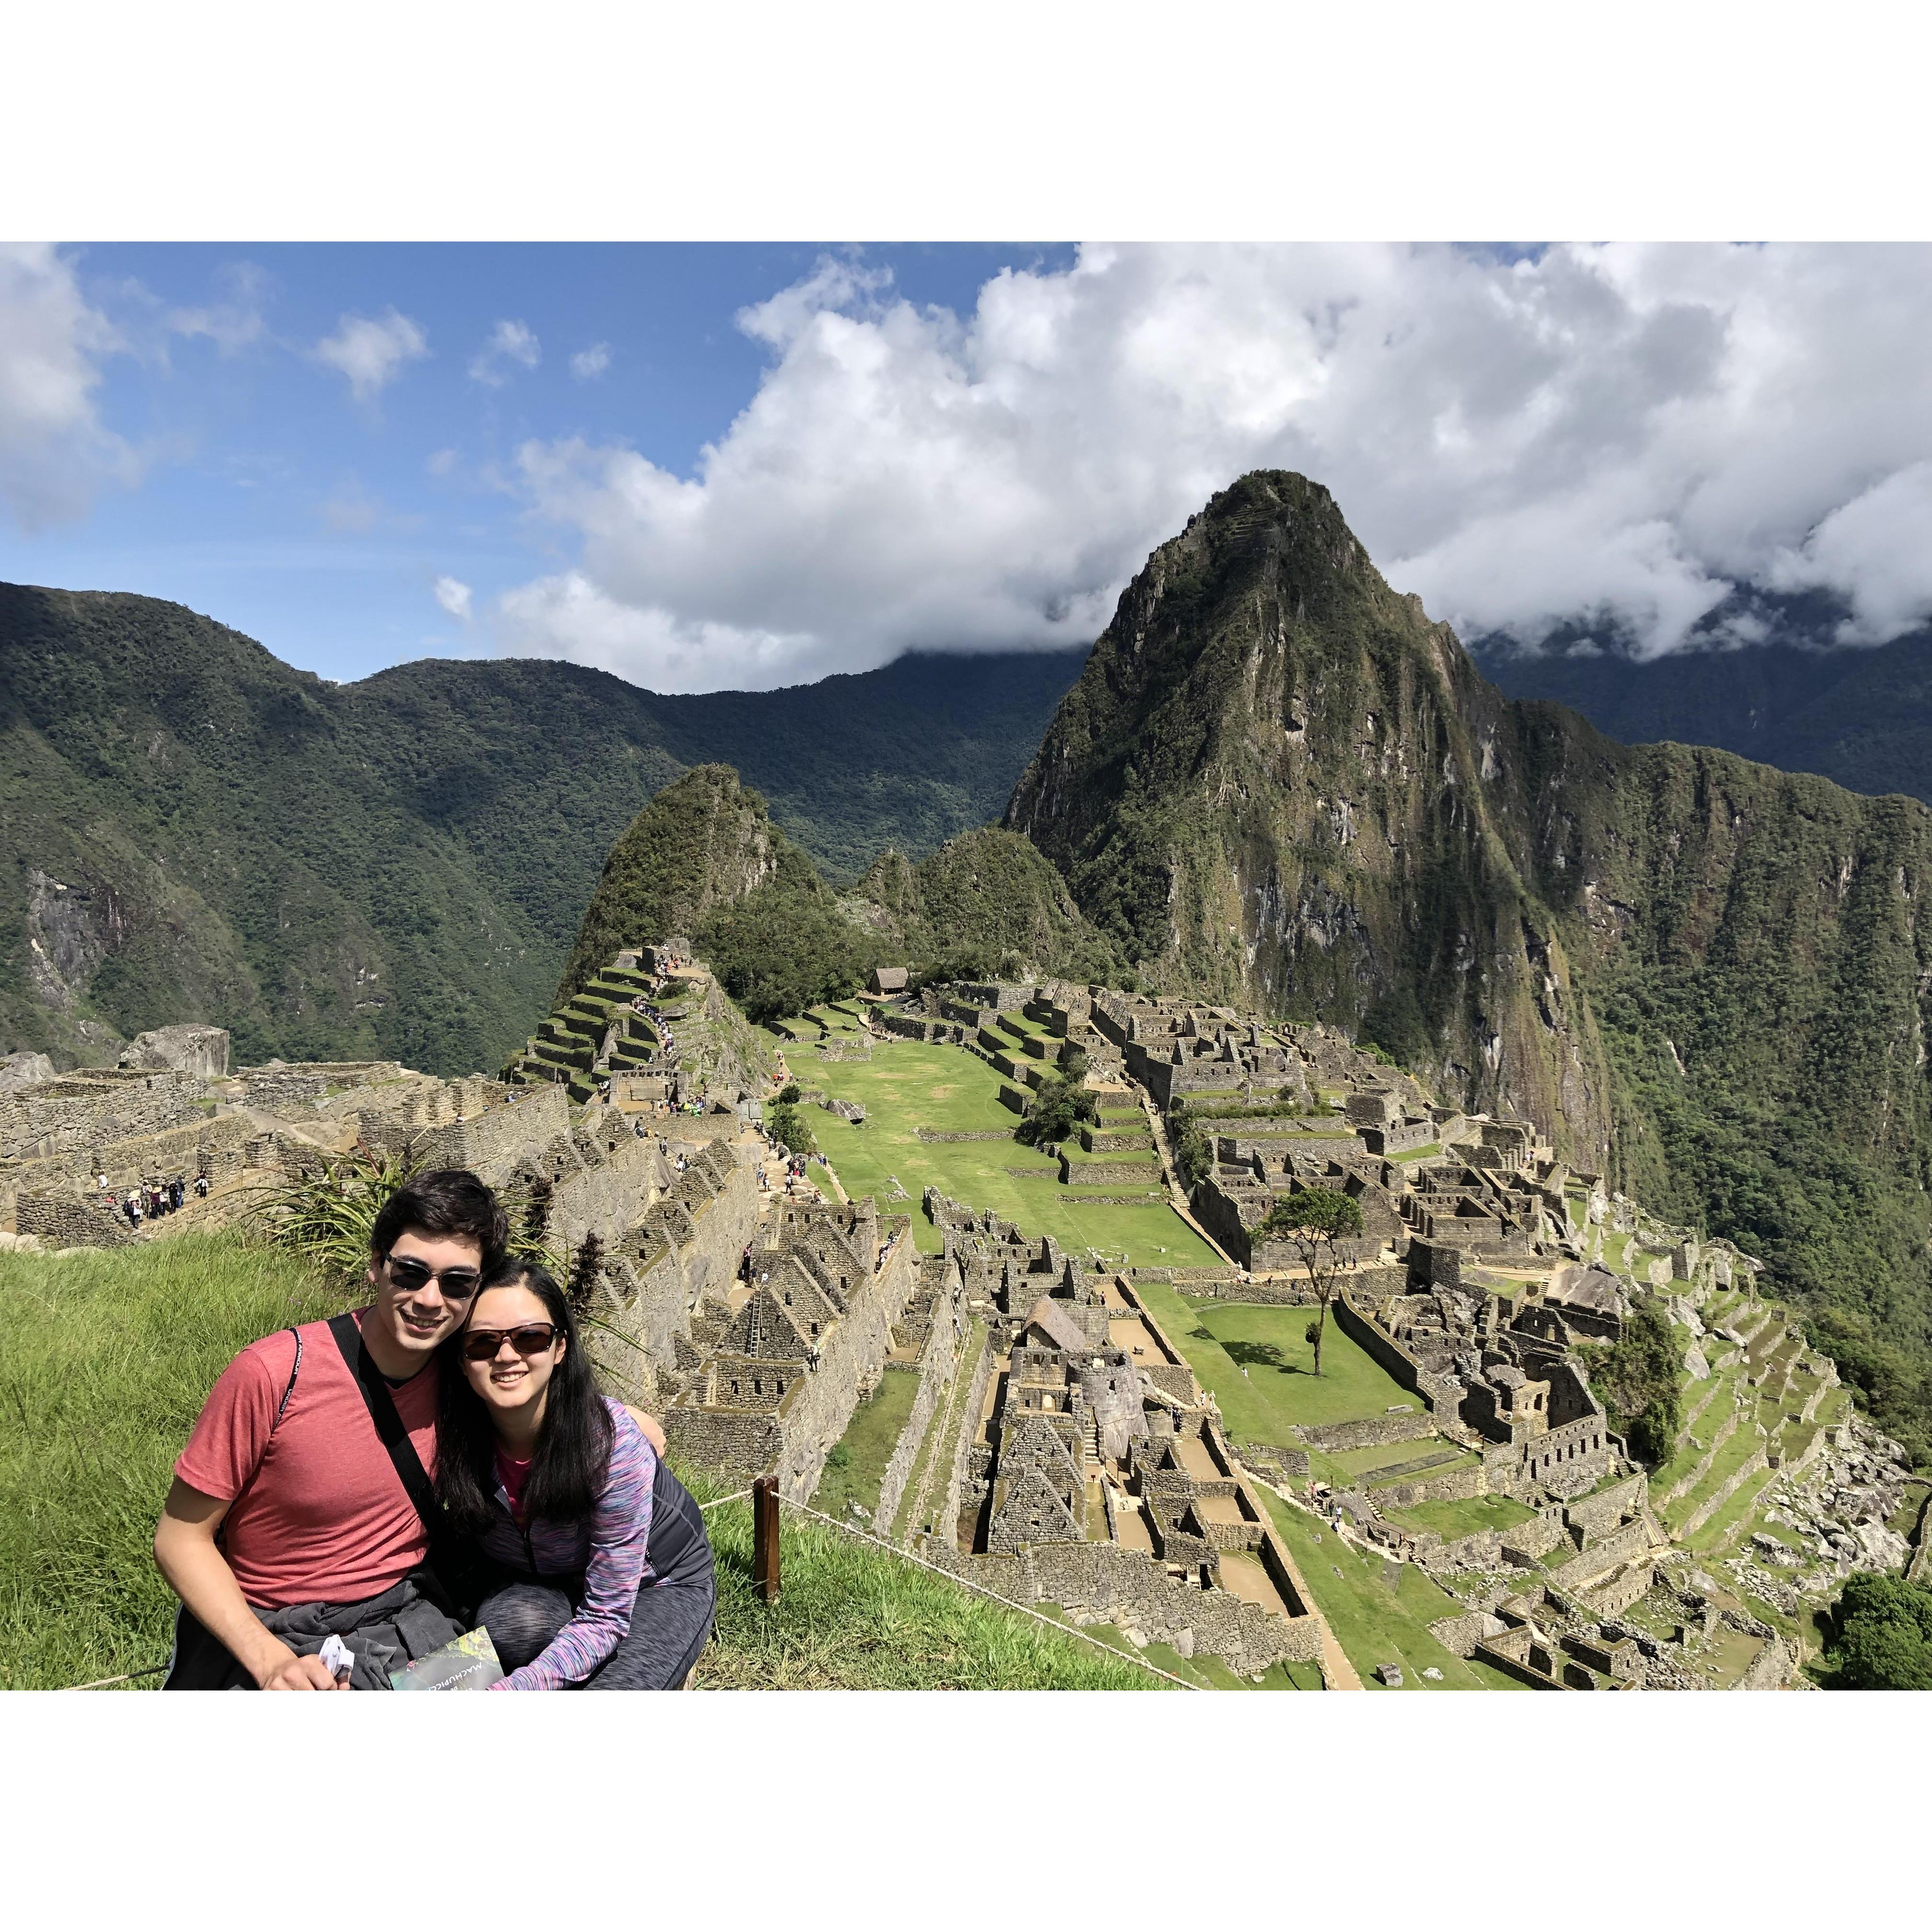 Overlooking Machu Picchu (December 2019)